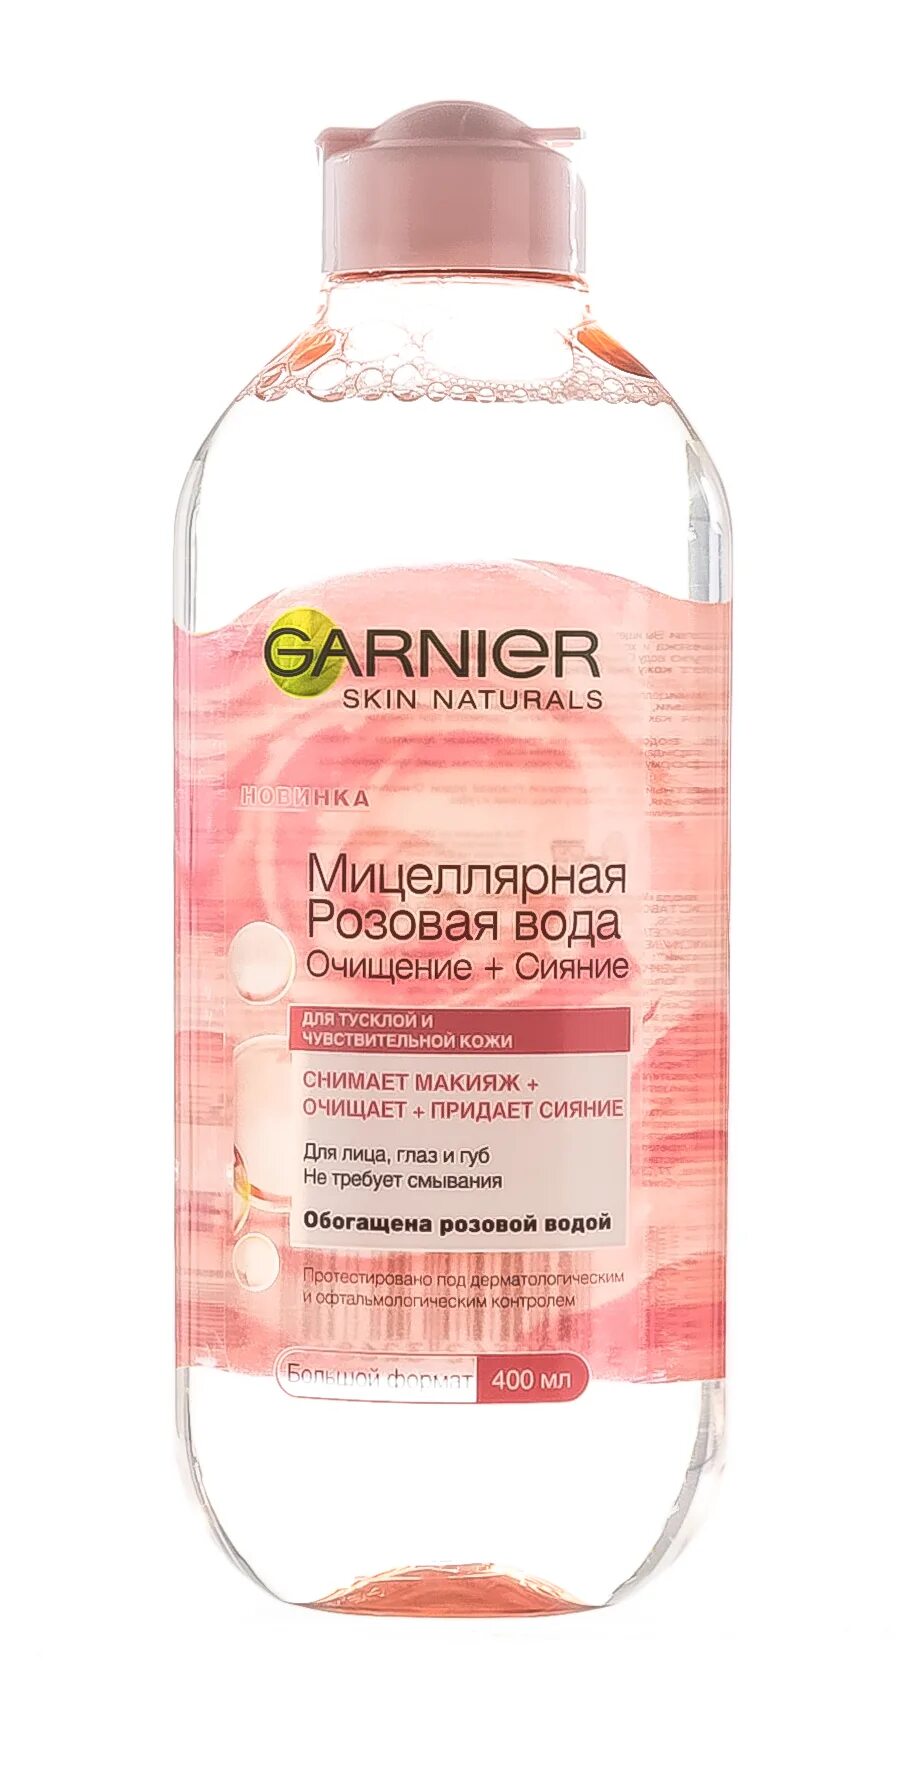 Мицеллярная розовая гарньер. Мицеллярная вода гарньер 400 розовая. Мицеллярная вода гарньер розовая. Garnier мицеллярная вода розовая. Garnier мицеллярная розовая вода 400мл.